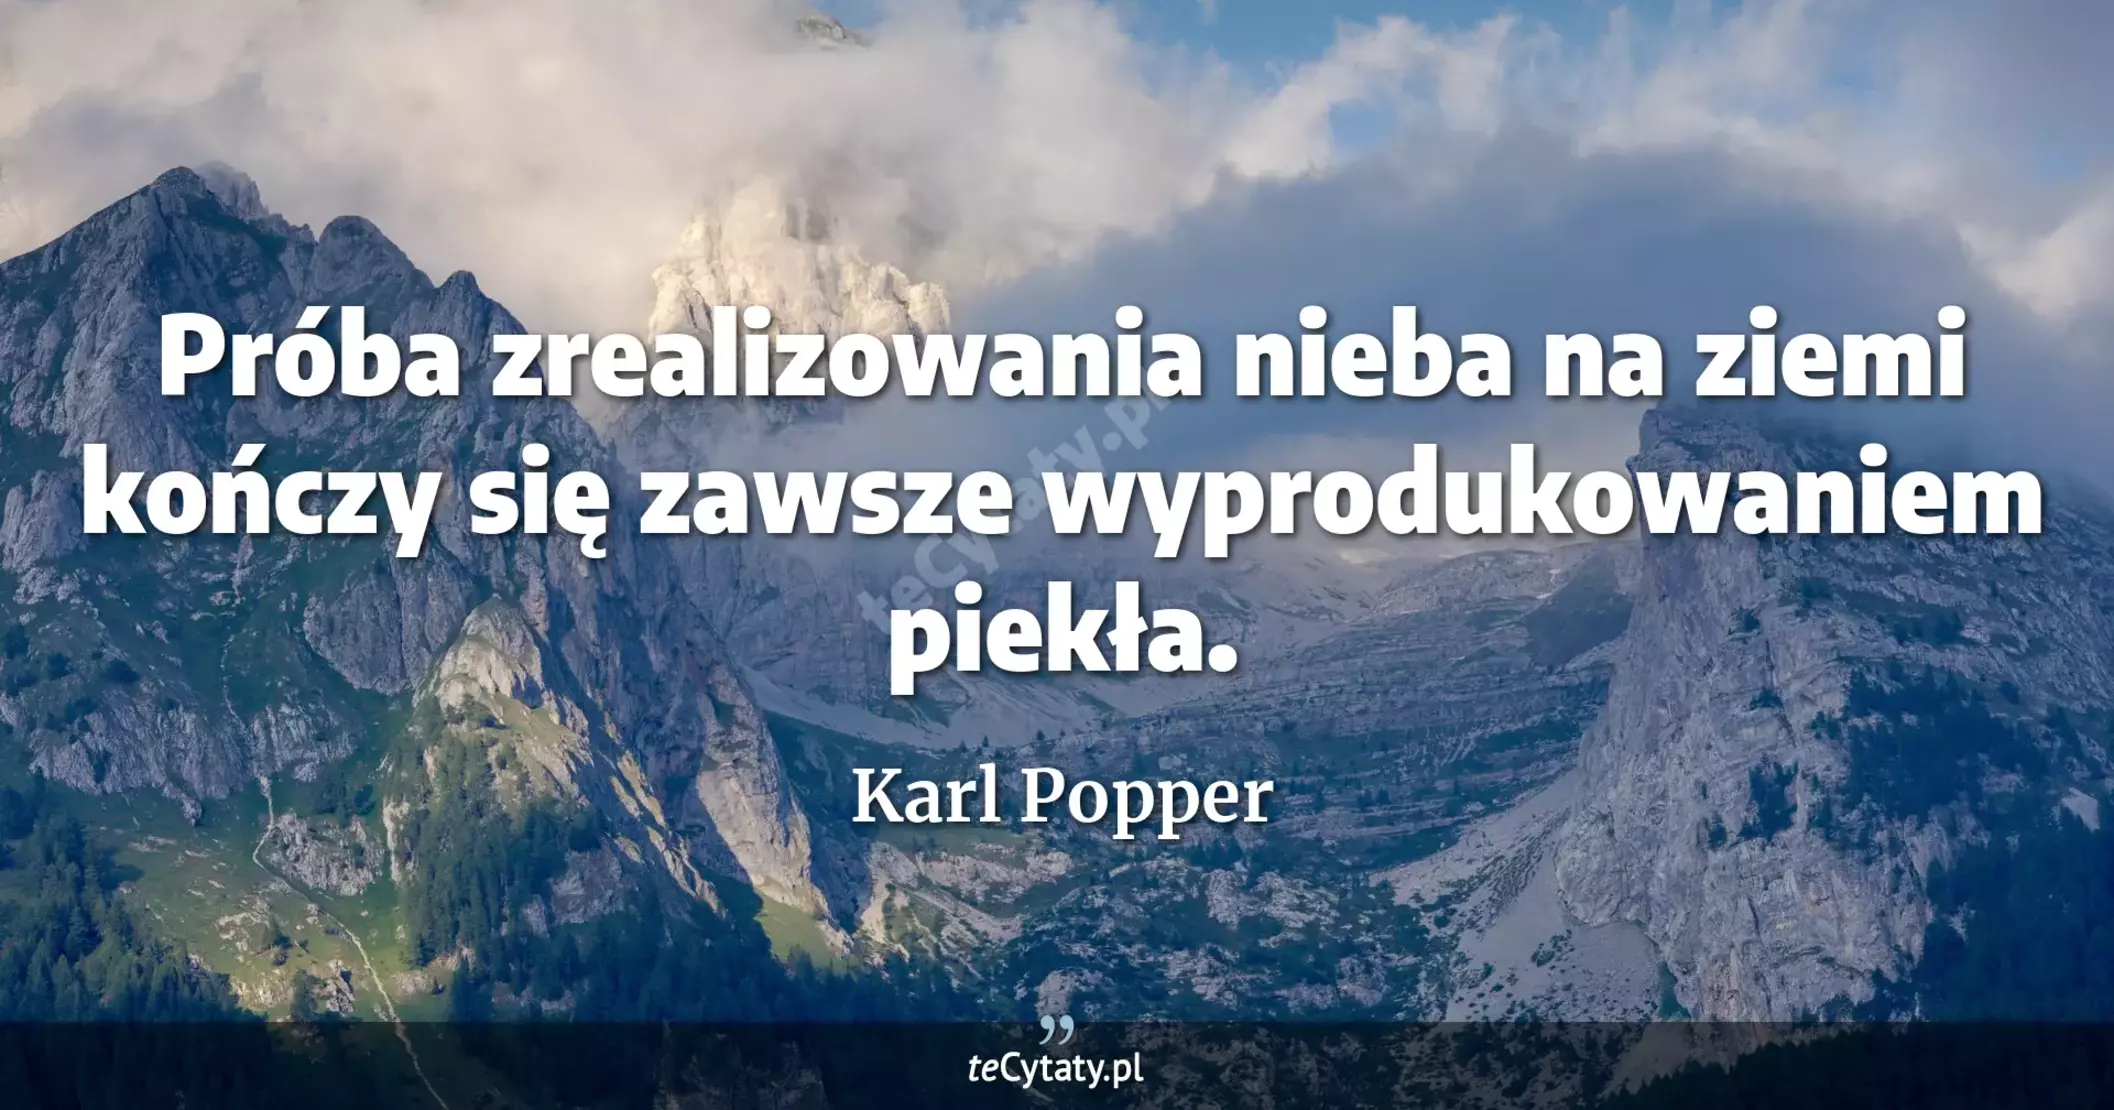 Próba zrealizowania nieba na ziemi kończy się zawsze wyprodukowaniem piekła. - Karl Popper